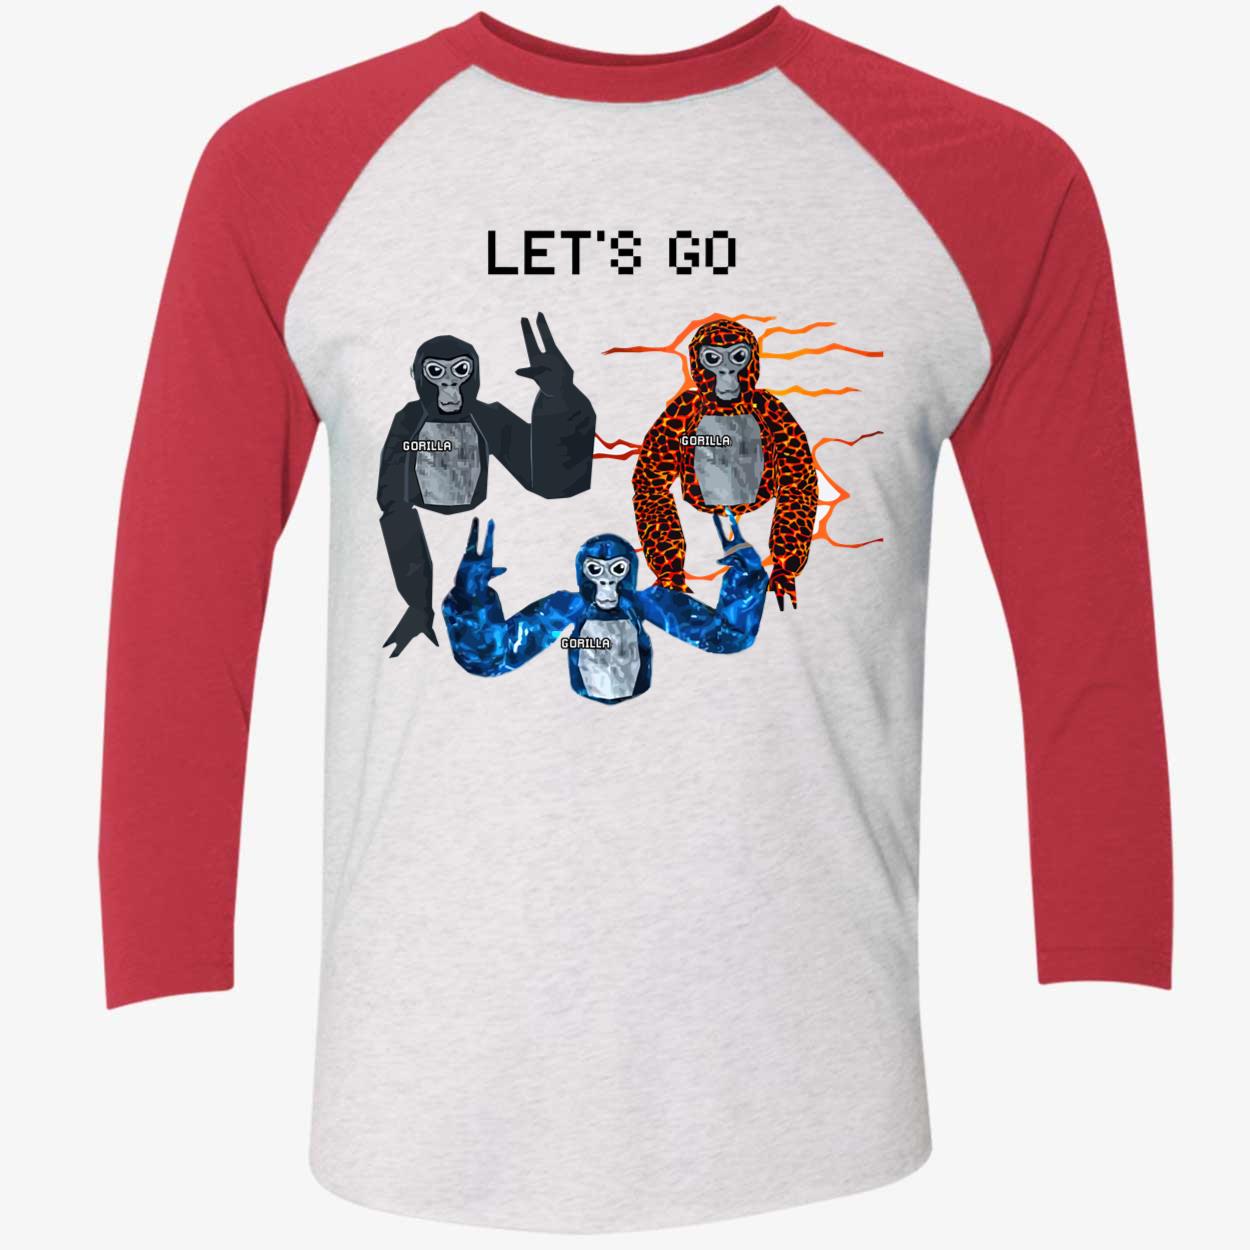 Let's Go, Gorilla Tag Blue Monke VR Gamer Shirt for Kids, Te - Inspire  Uplift